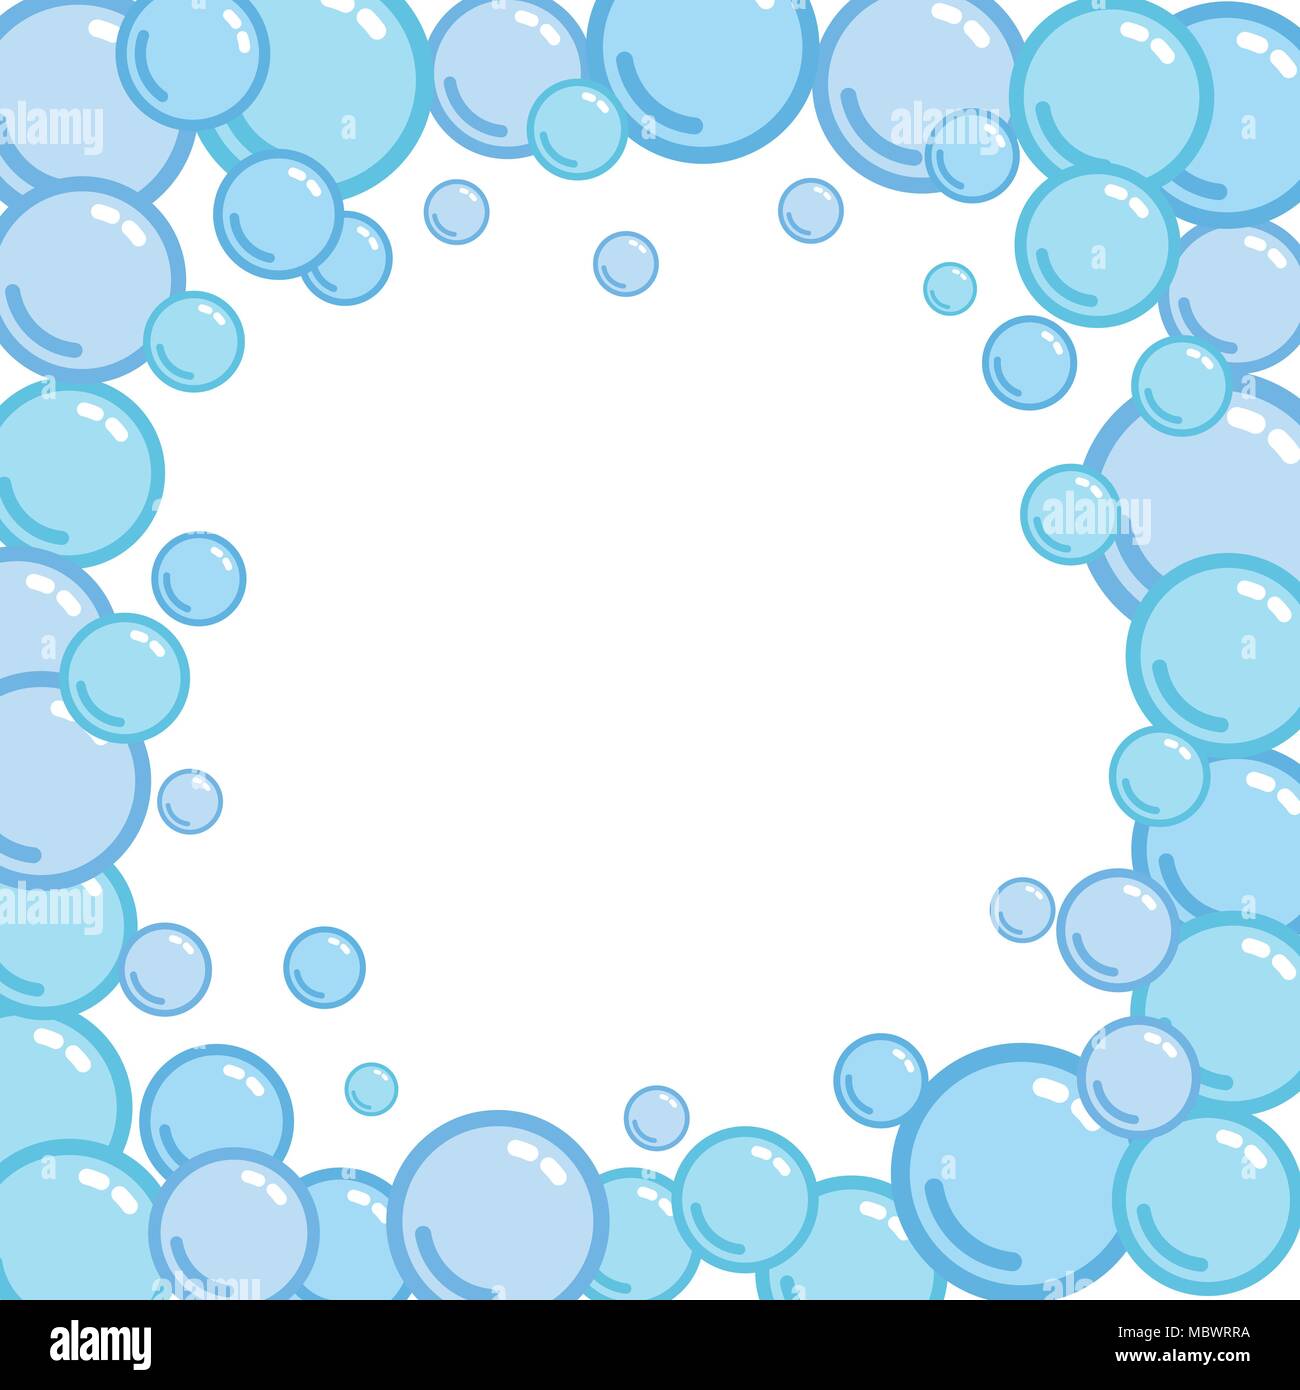 Bubble frame, Platz für Text, der von Blobs, Seife blister Bounding Box, Schaum, Vektor, Abbildung Stock Vektor